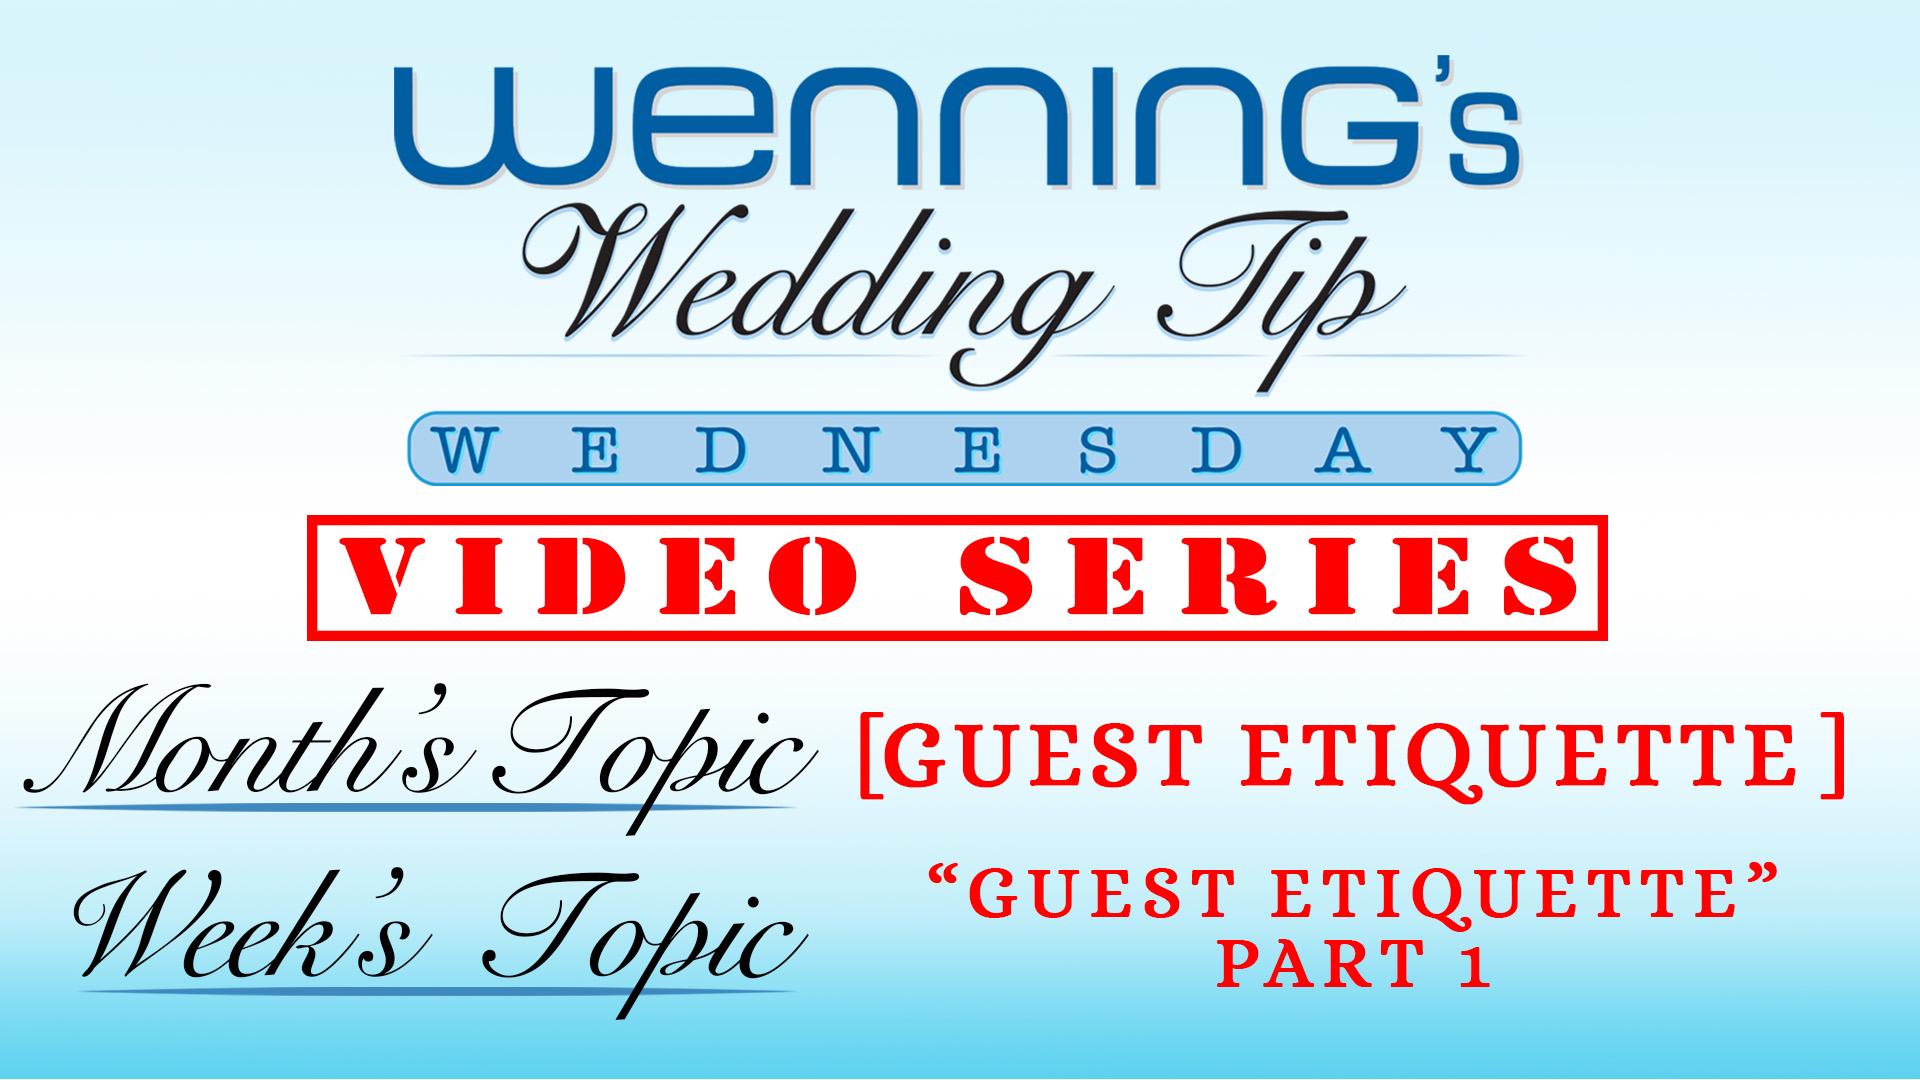 Guest Etiquette Part | Wedding Tips